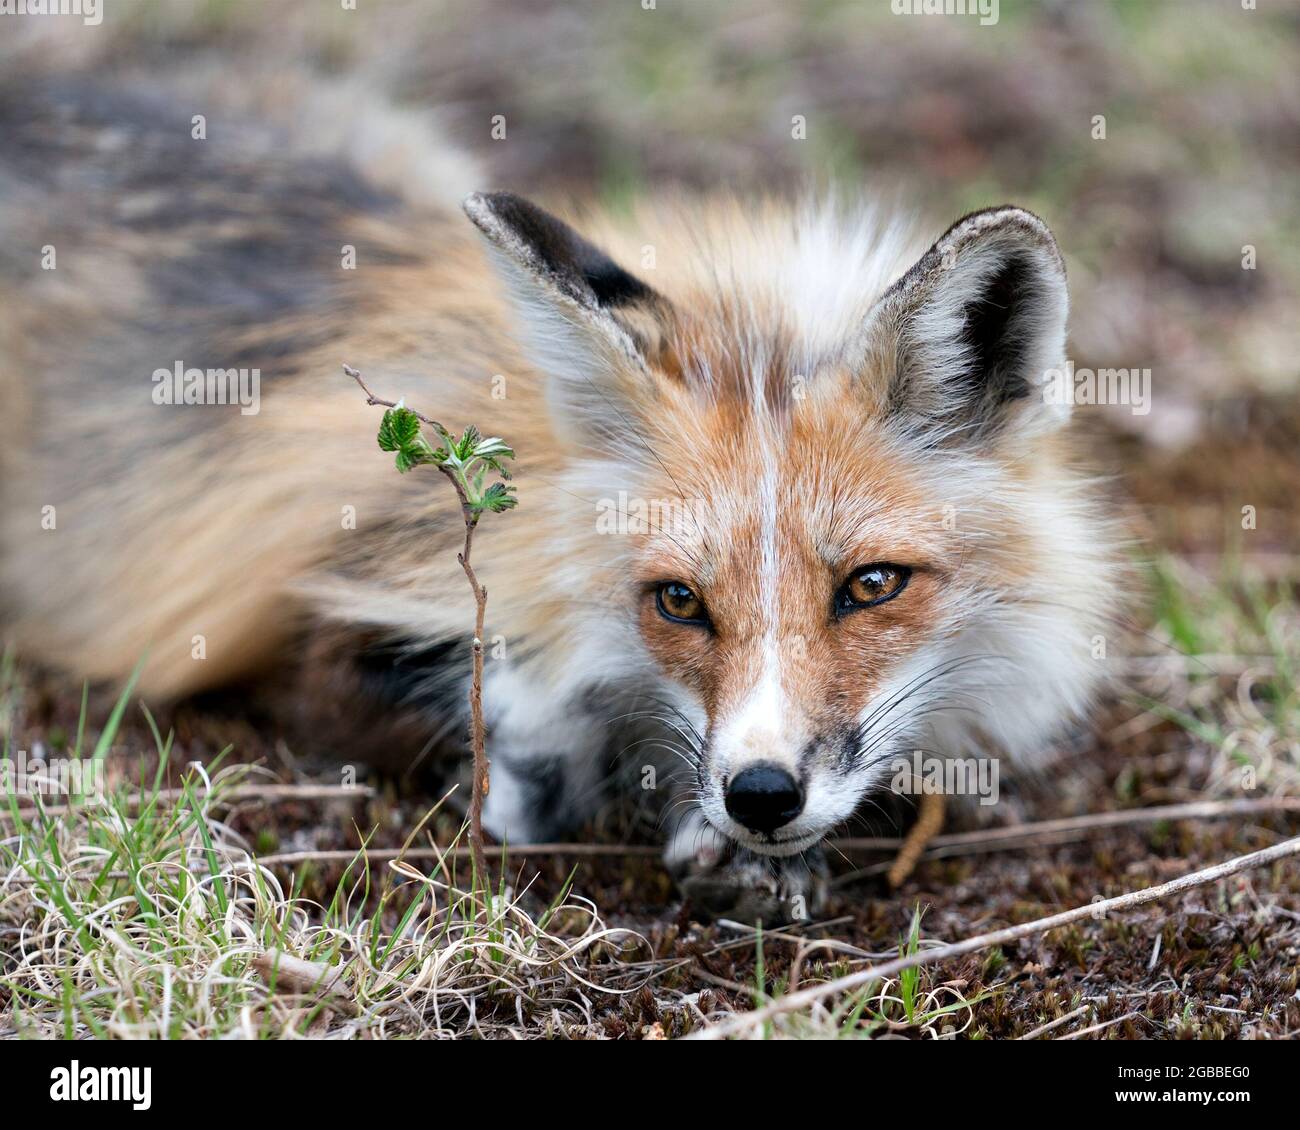 Red Fox head primo piano guardando la fotocamera con uno sfondo sfocato nel suo habitat e ambiente. Immagine. Verticale. Immagine FOX. Colpo di testa. Foto Stock